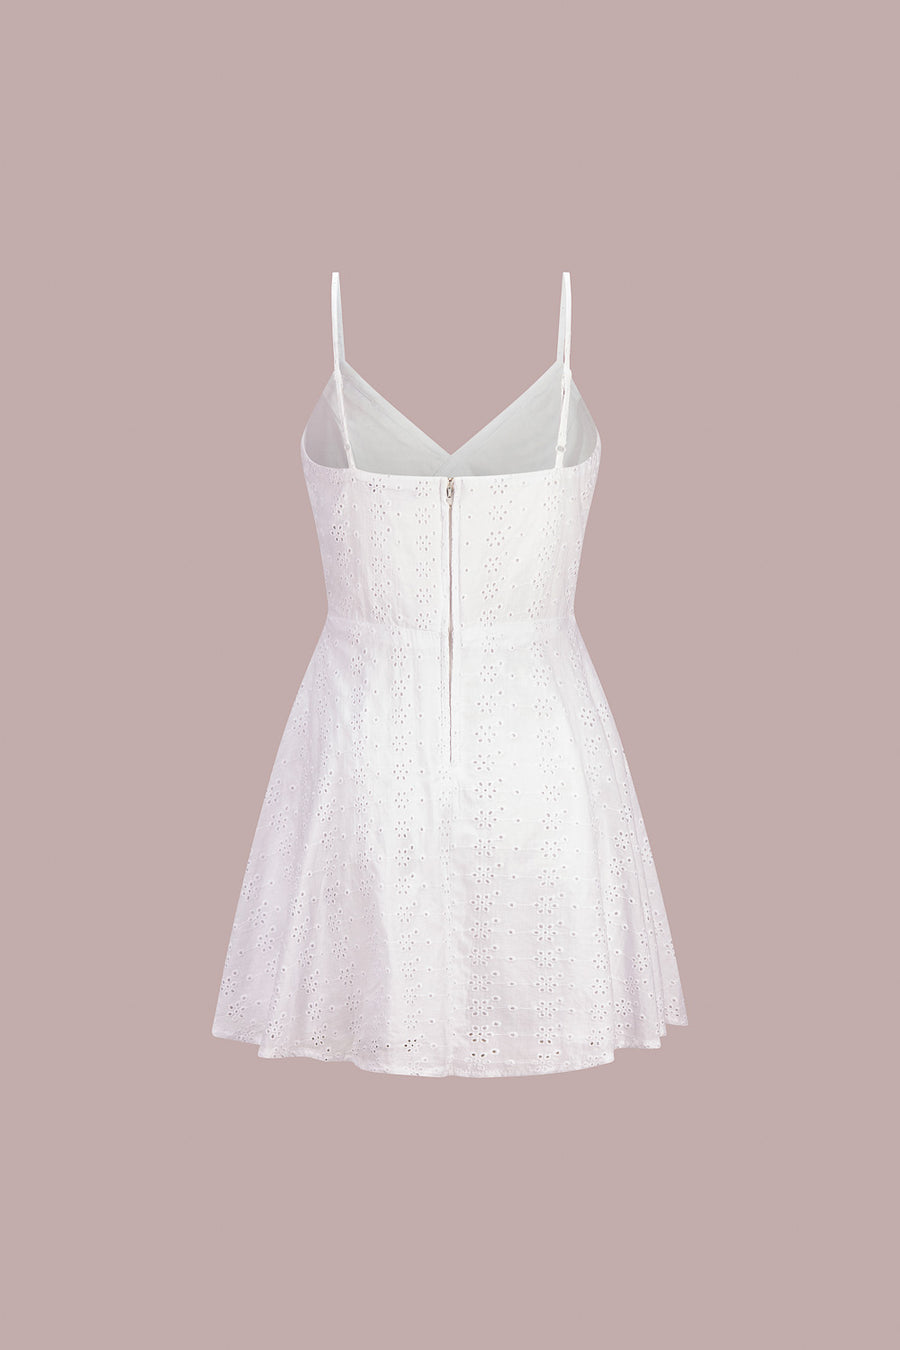 White Eyelet Ruffle Dress - Trixxi Clothing